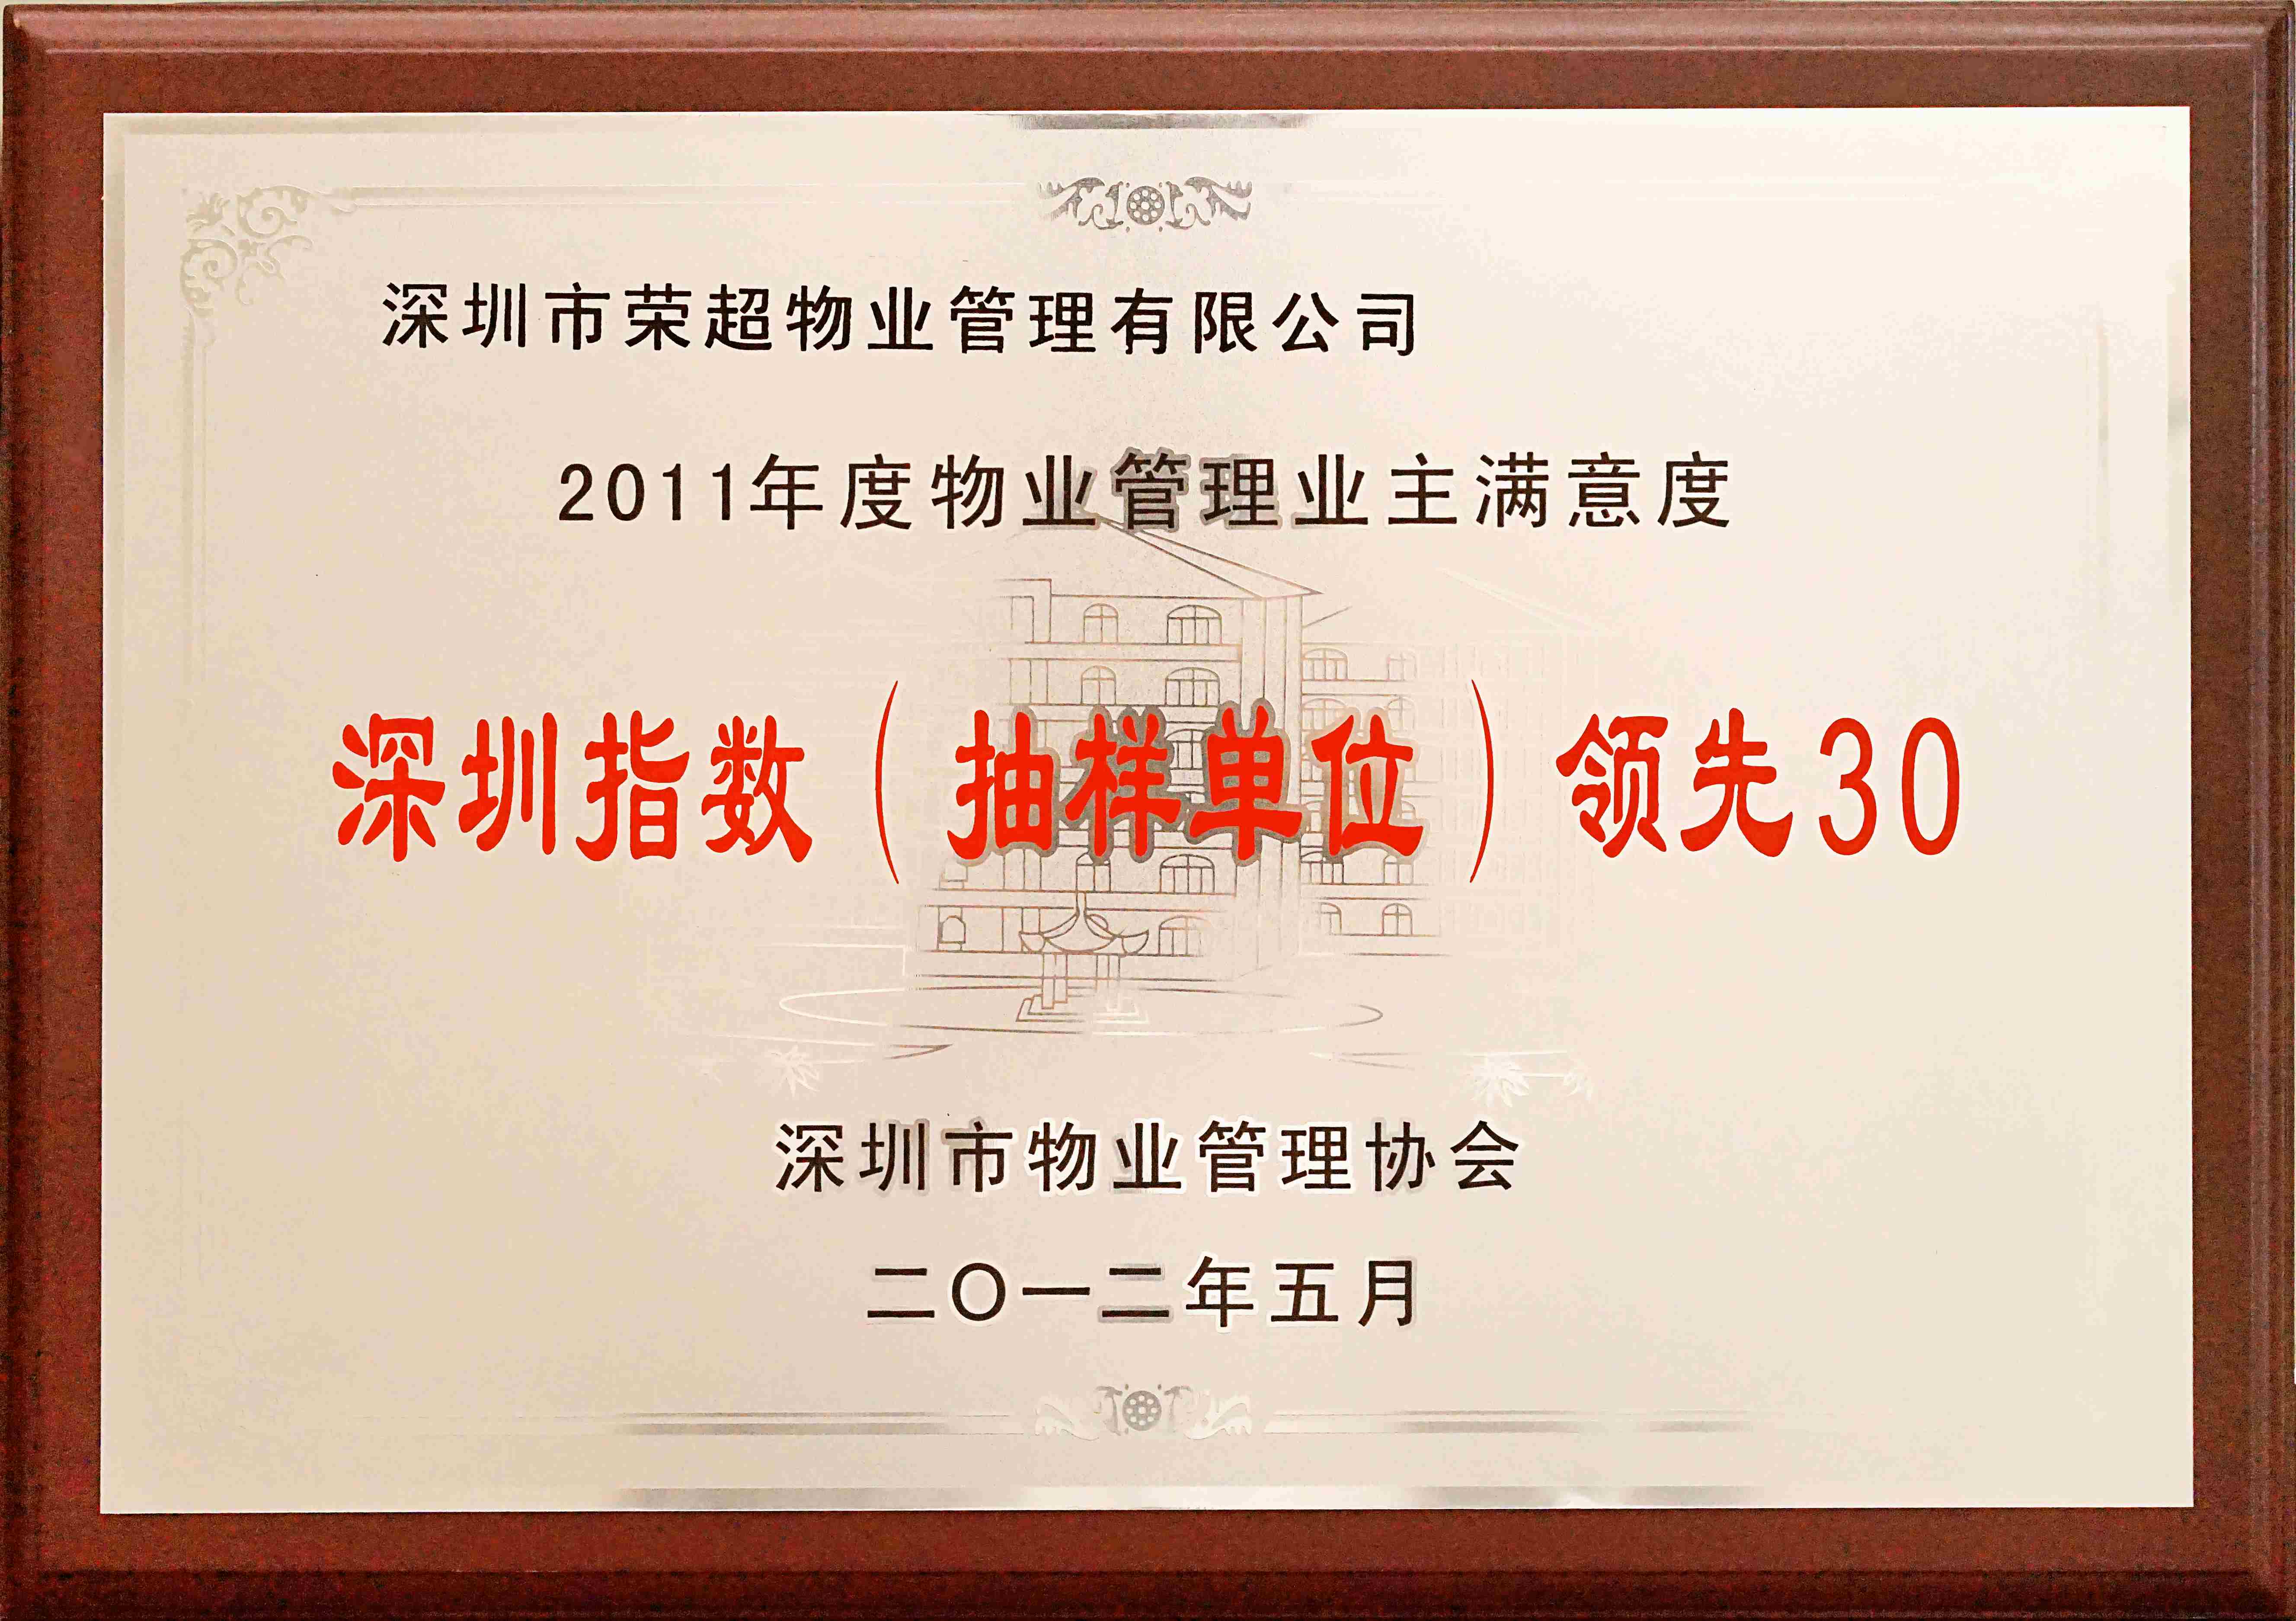 2011年度物业管理业主满意度深圳指数领先30.jpg